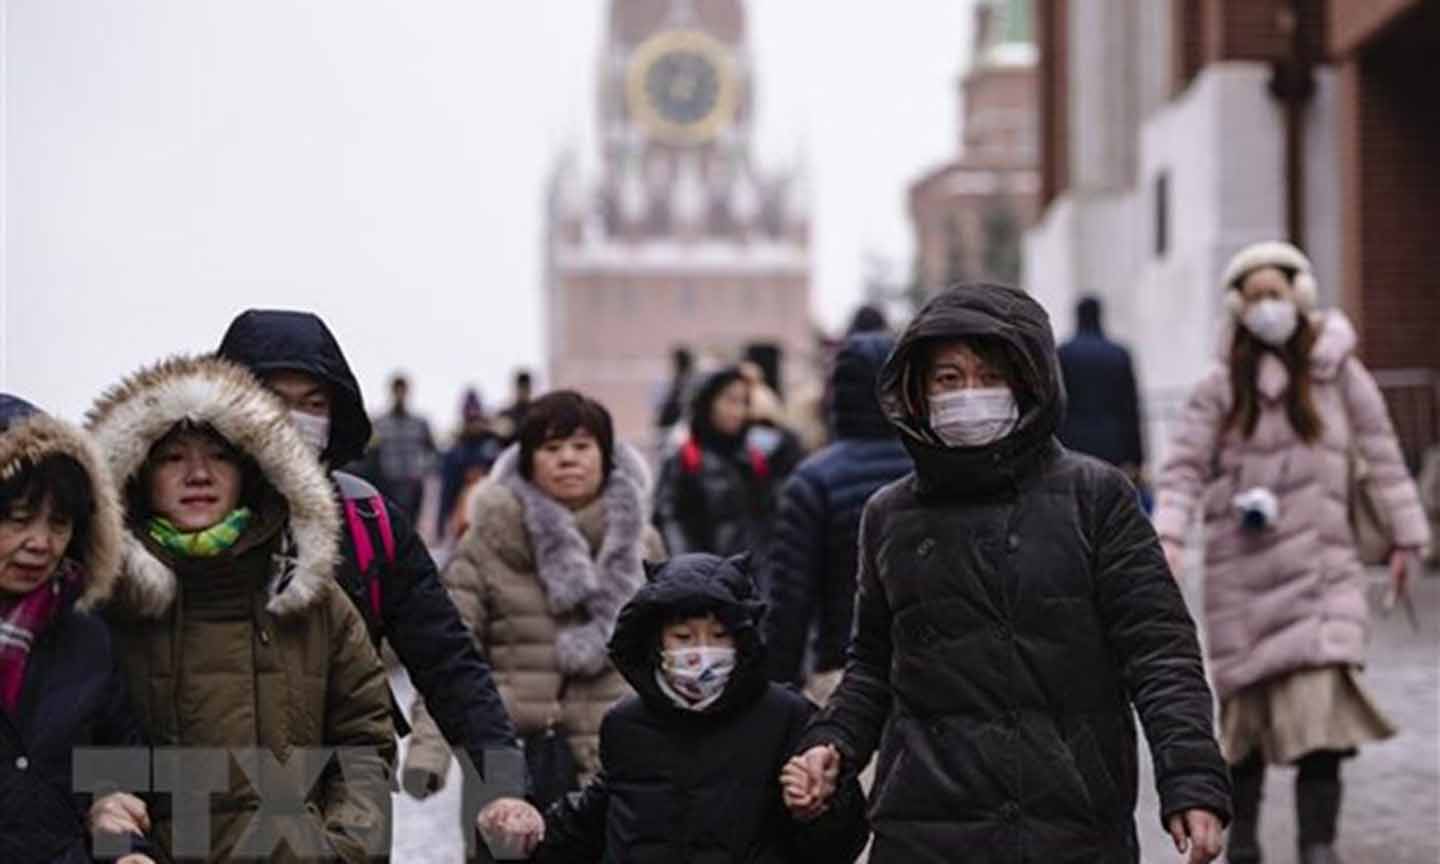 Người dân Nga và khách du lịch đeo khẩu trang phòng ngừa lây lan virus corona tại Moskva, Nga. (Ảnh: AFP/TTXVN)